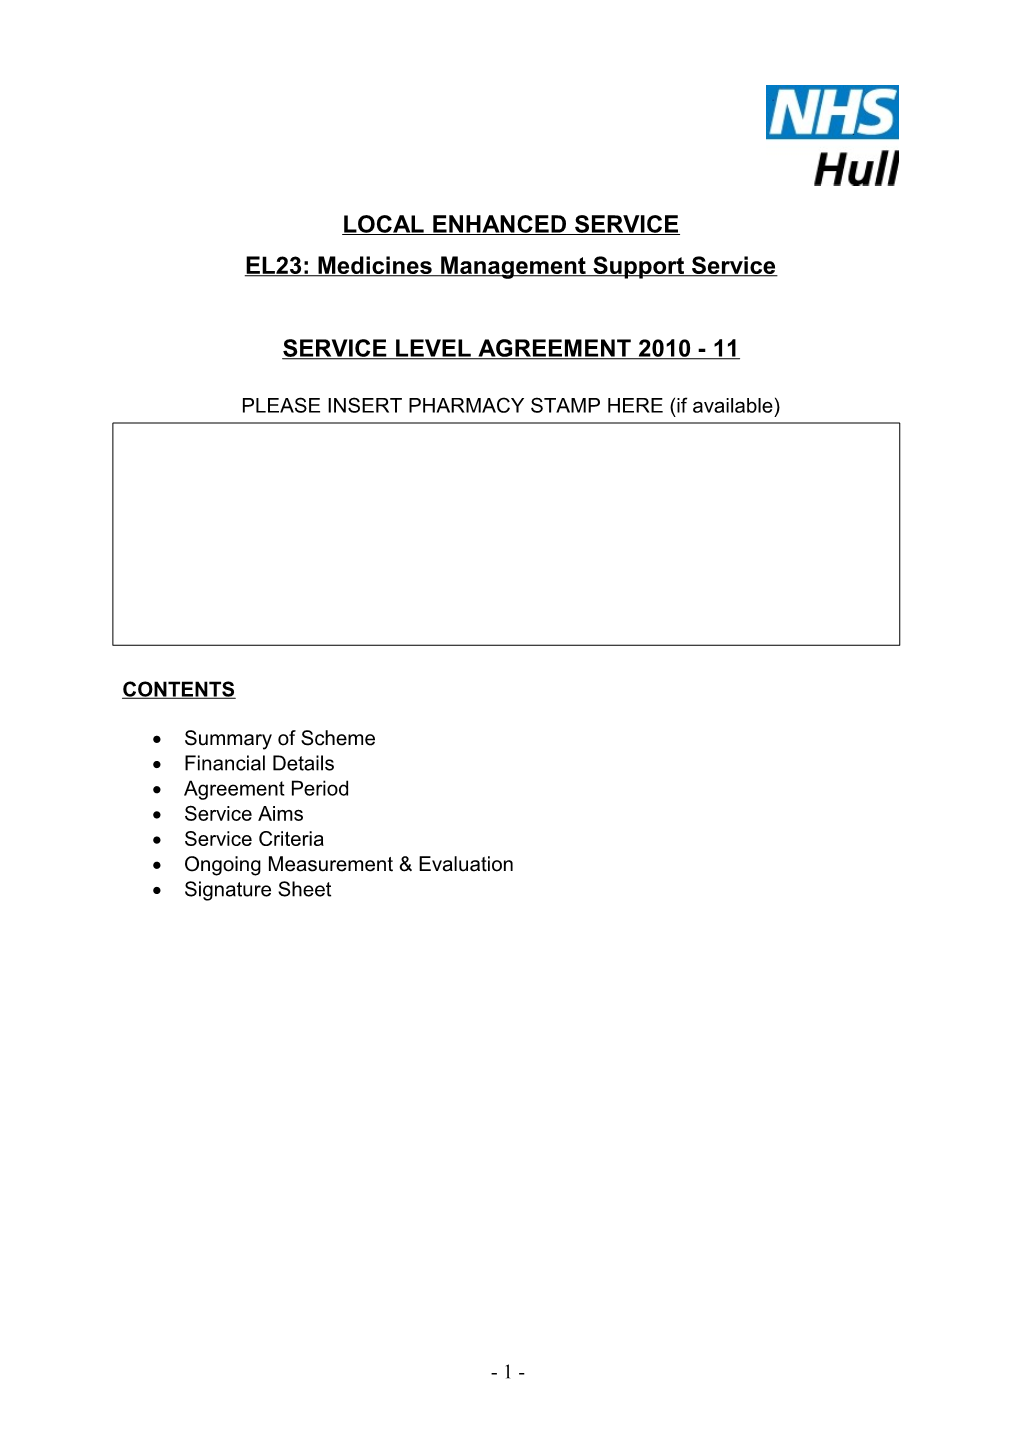 EL23: Medicines Management Support Service